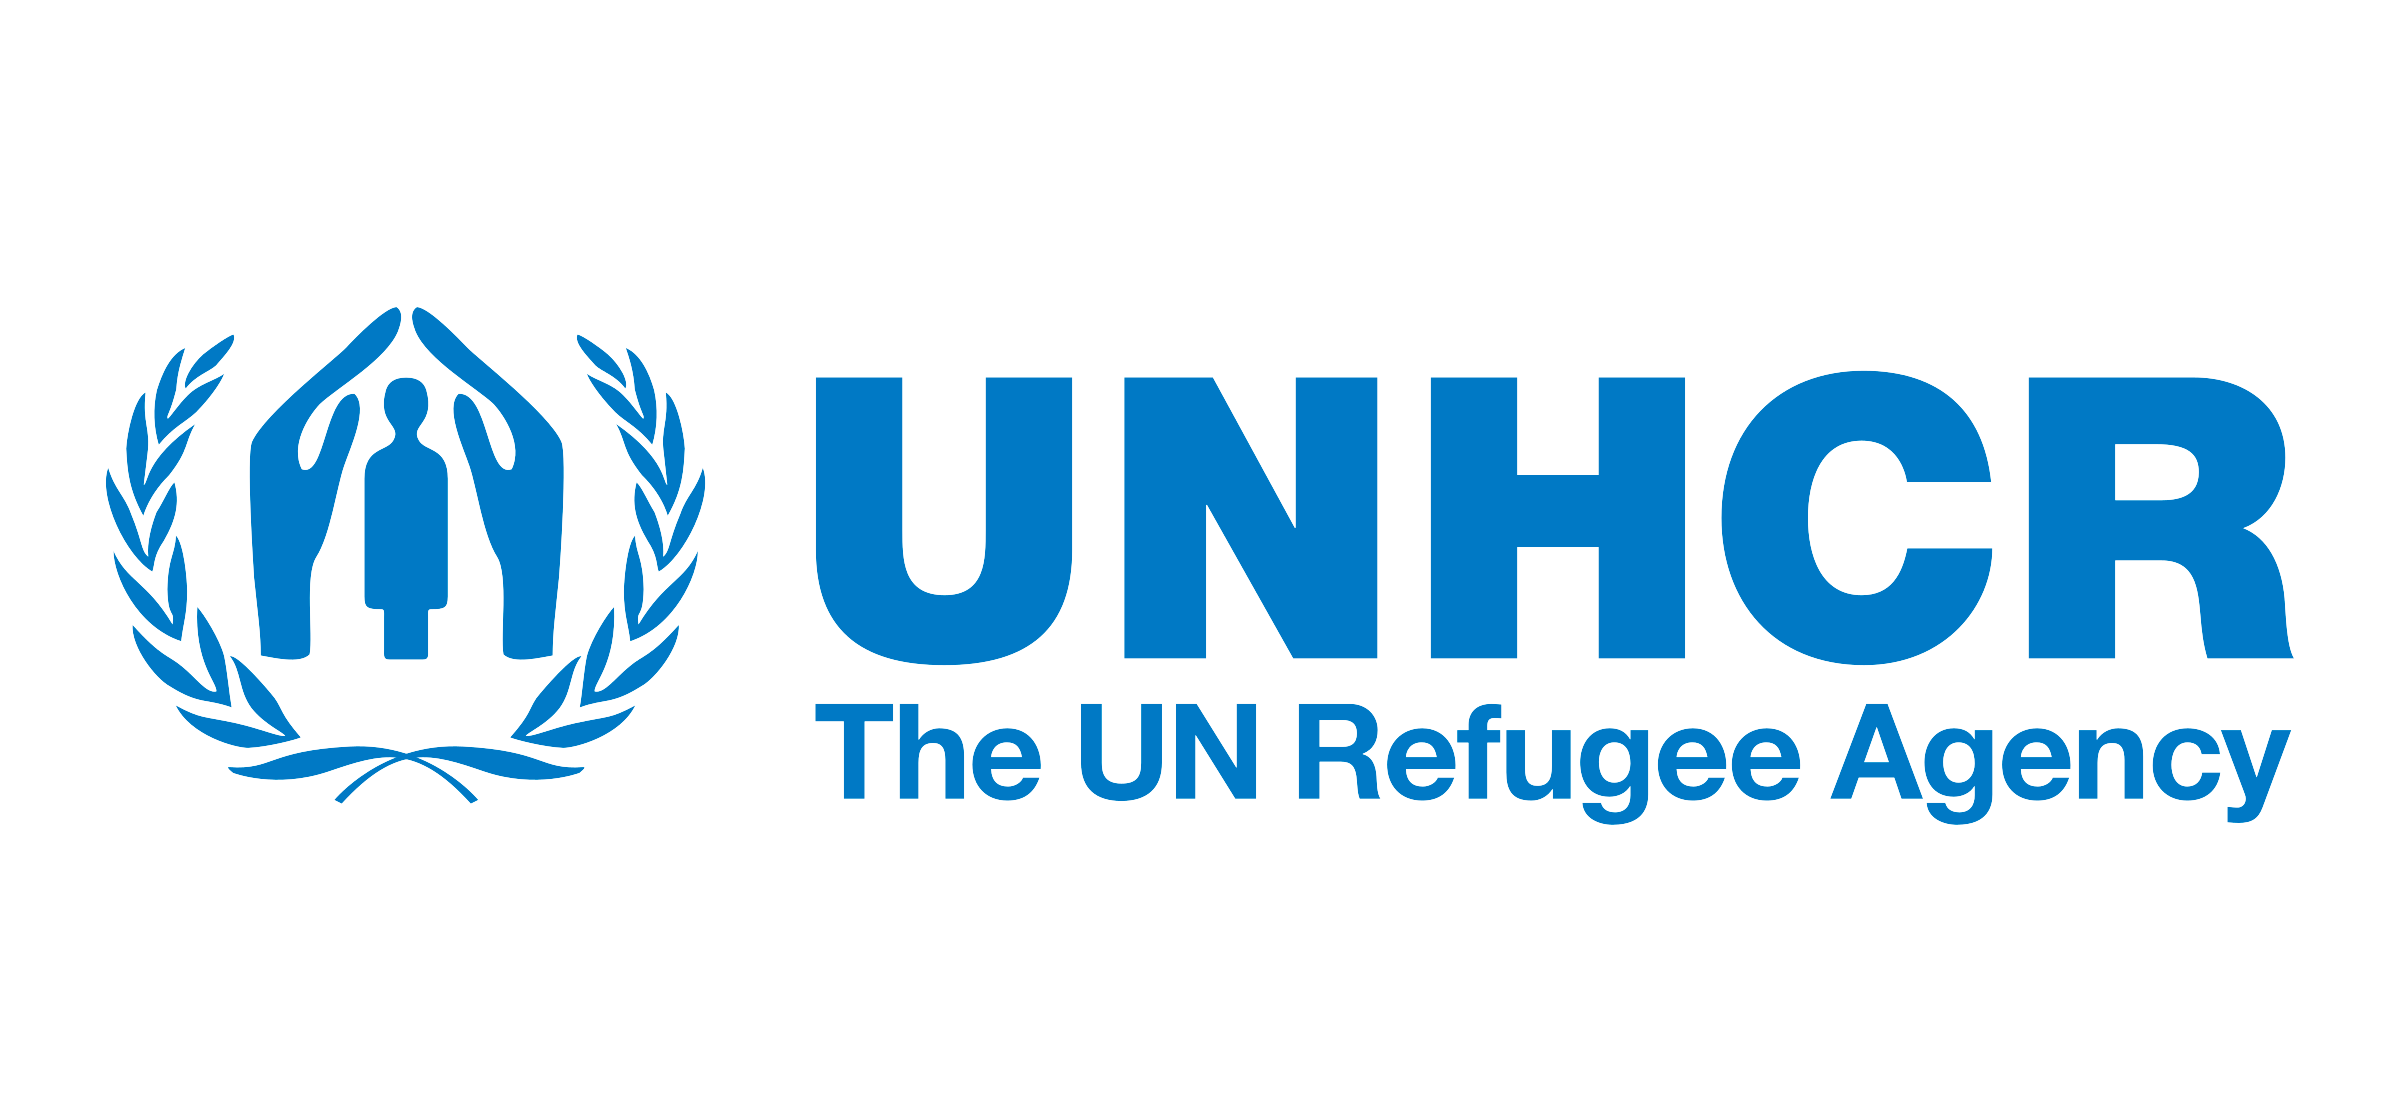 UNHCR Global Fleet Management